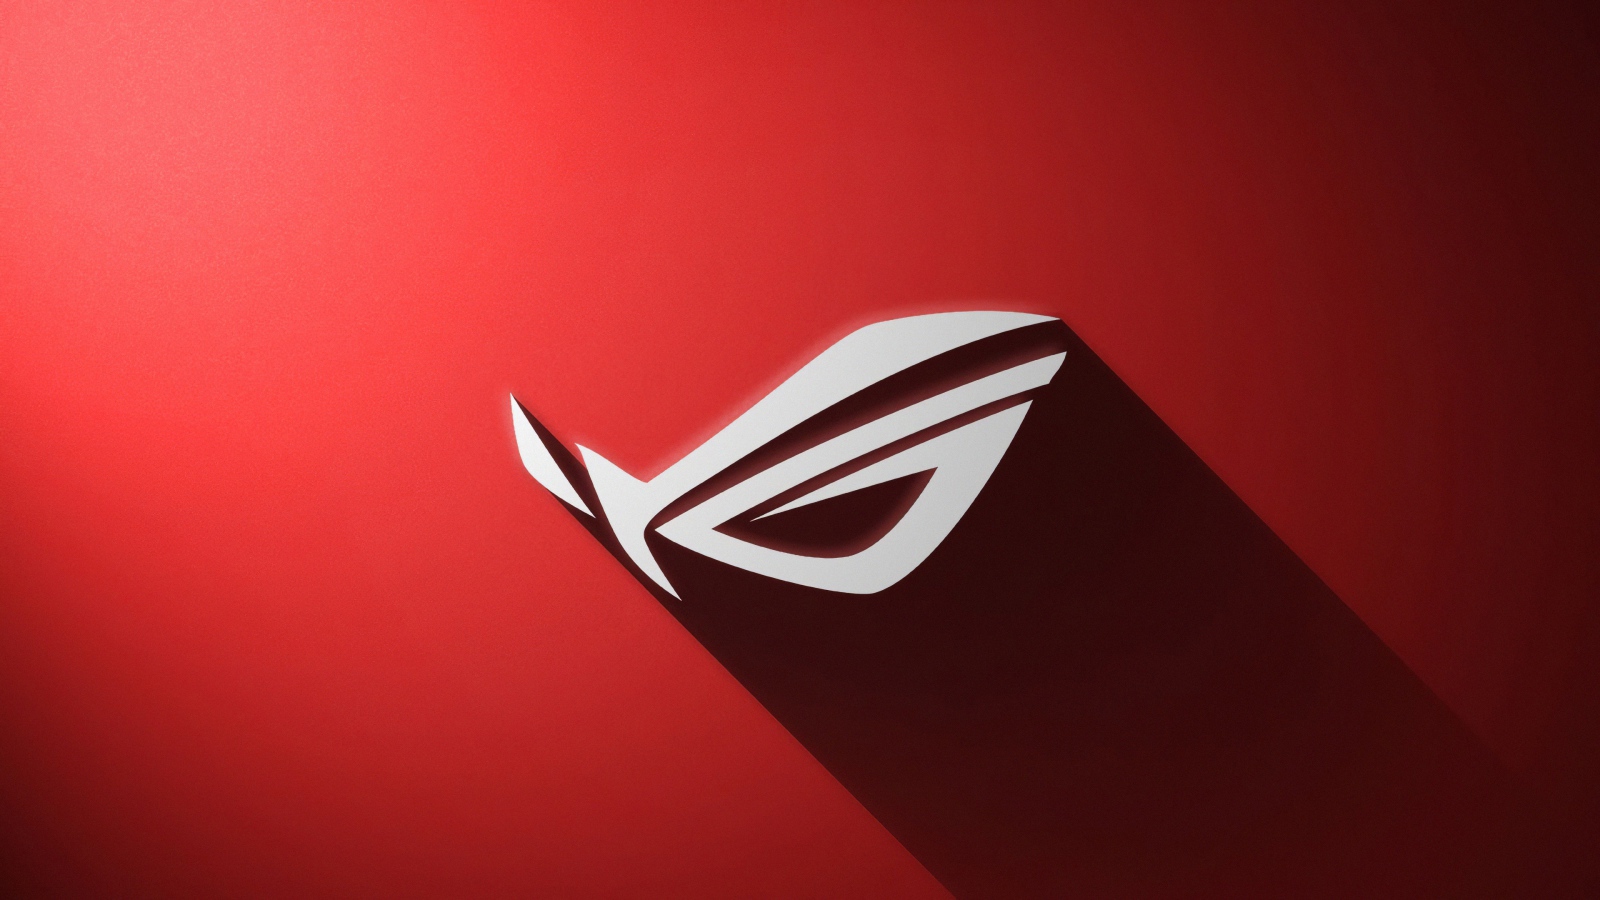 Логотип ASUS ROG  на красном фоне